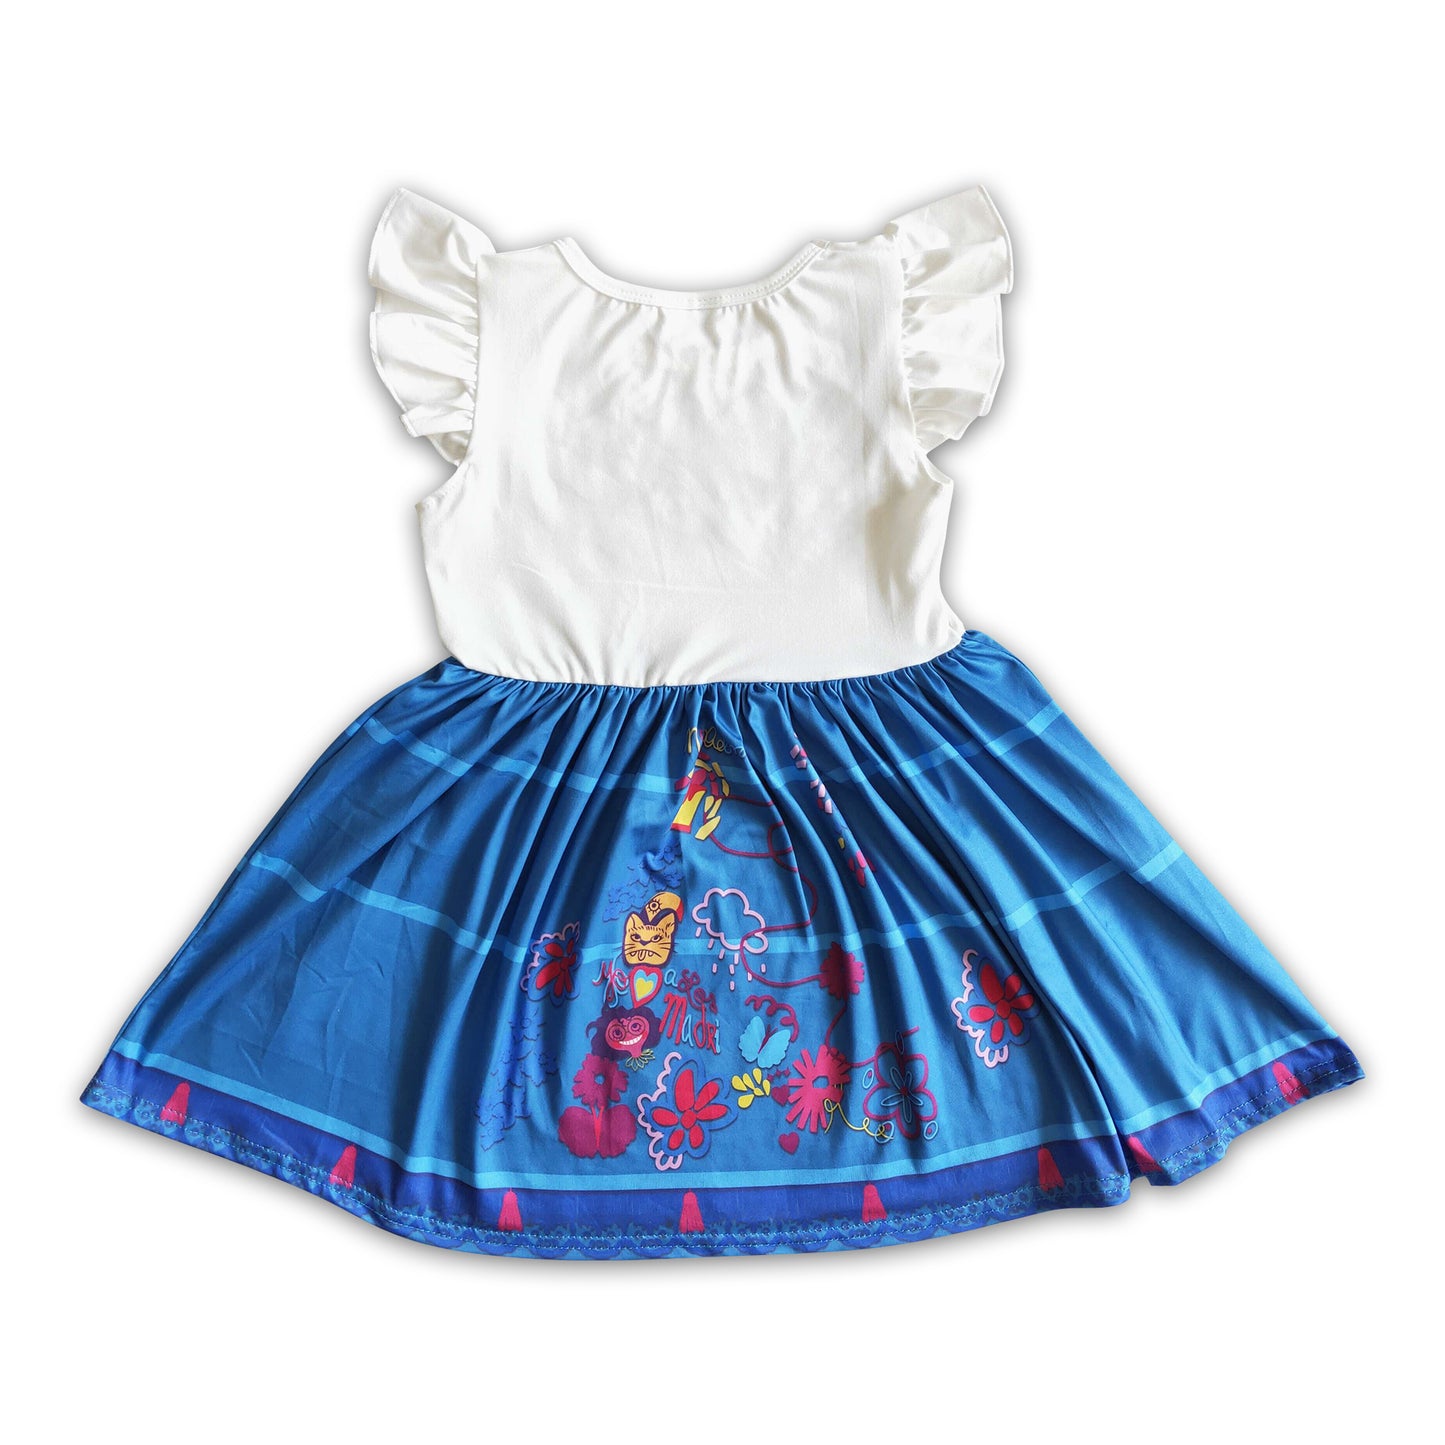 Flutter sleeve girls cute magic twirl summer dresses